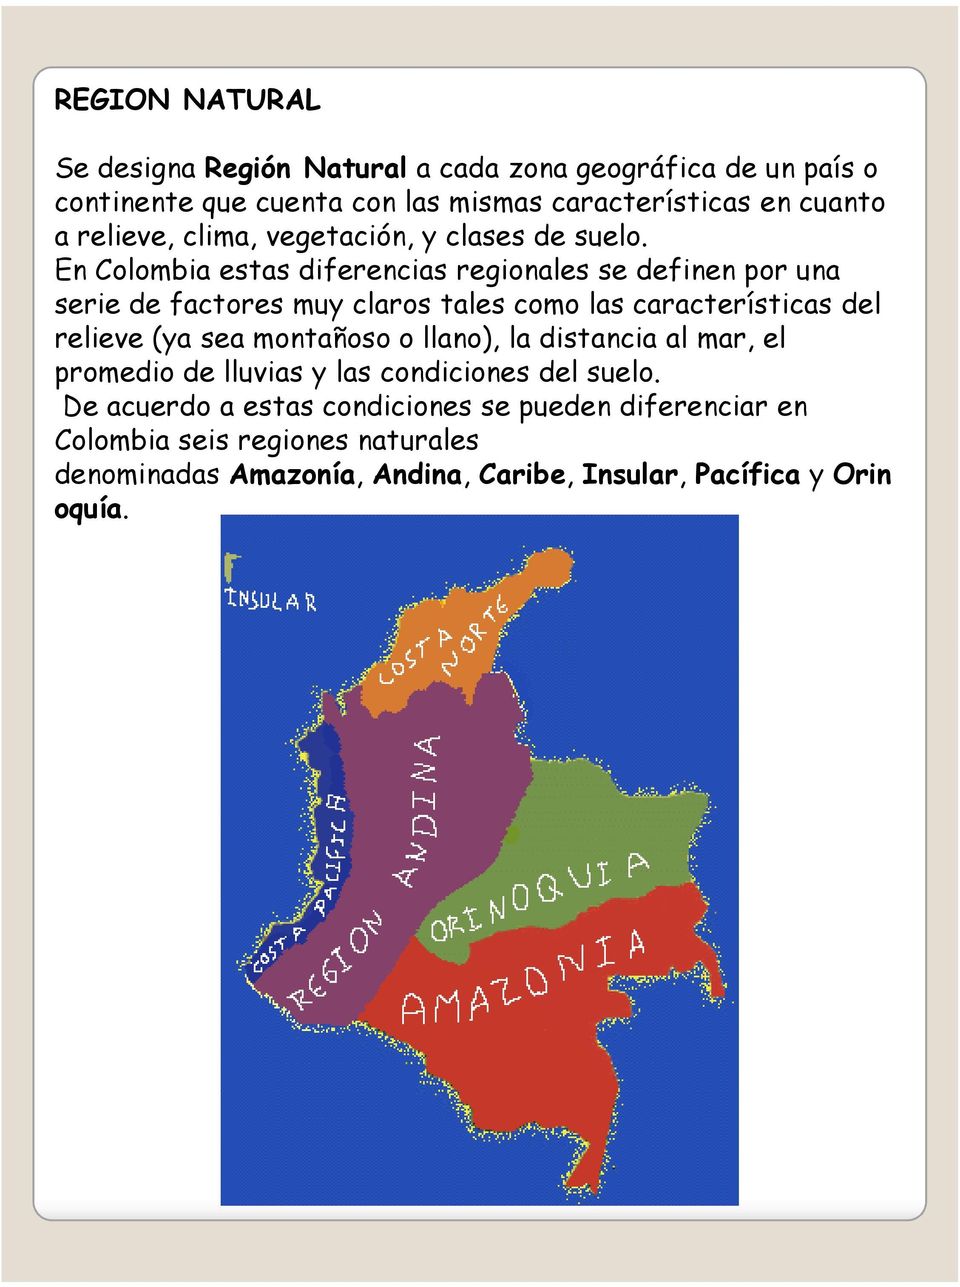 En Colombia estas diferencias regionales se definen por una serie de factores muy claros tales como las características del relieve (ya sea